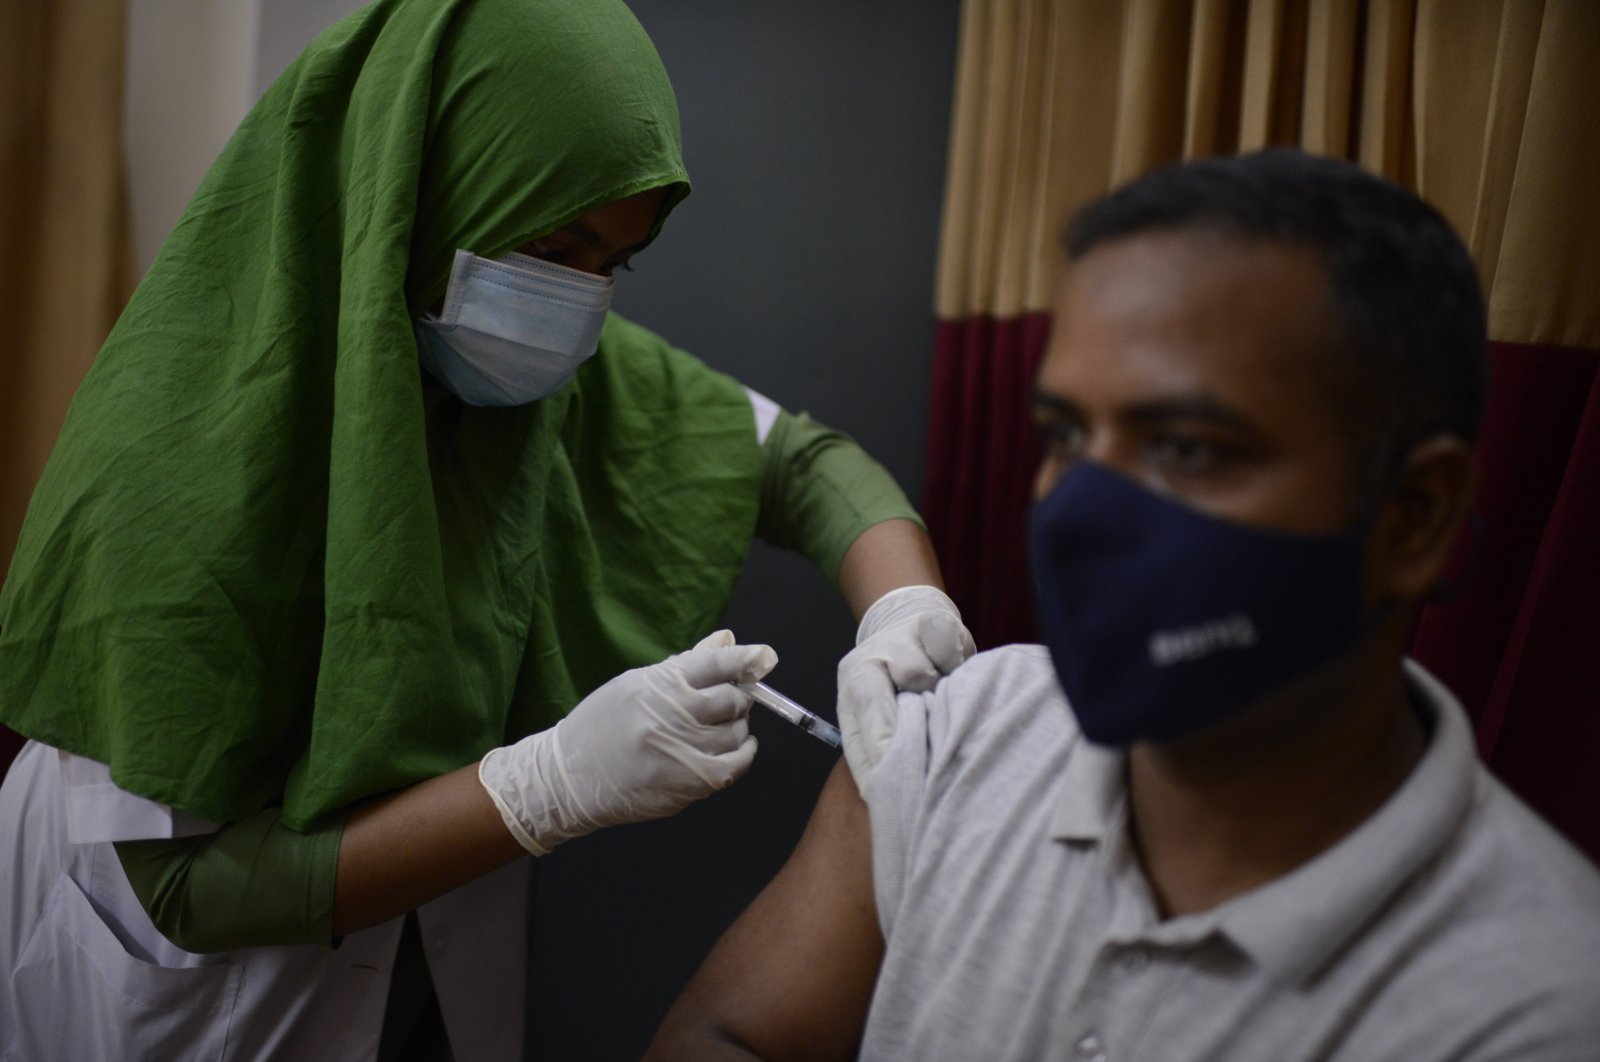 A Bangladeshi man receives a vaccine for COVID-19 at a hospital in Dhaka, Bangladesh, Saturday, May 8, 2021. (AP Photo)